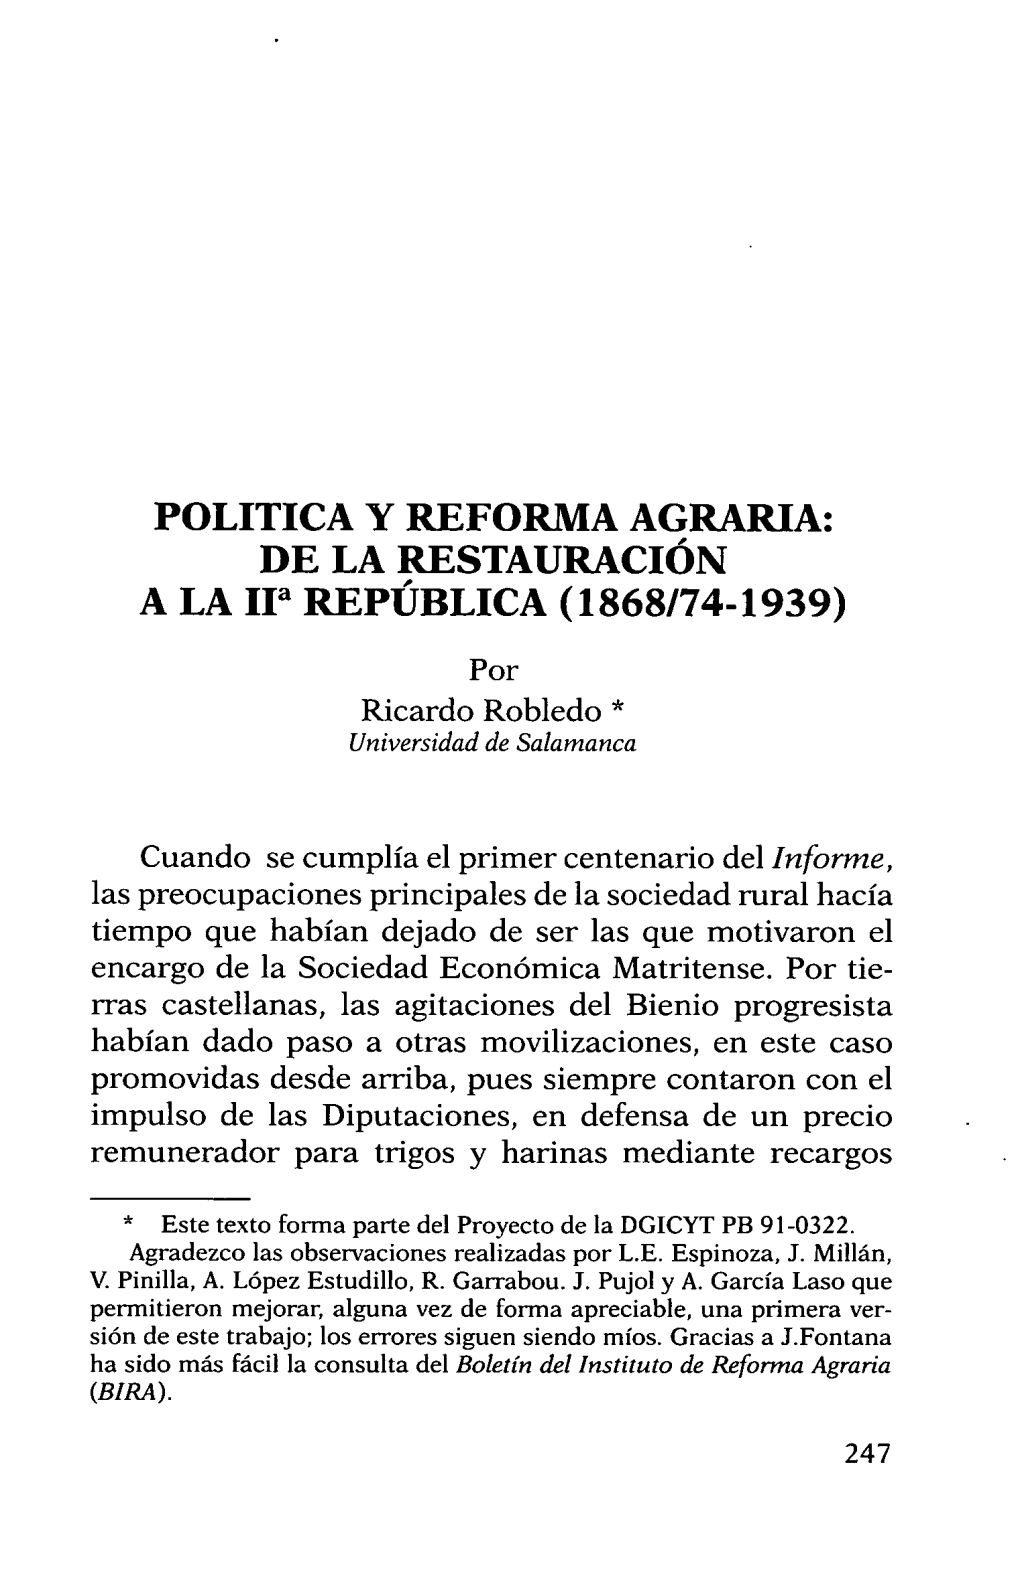 POLITICA Y REFORMA AGRARIA: DE LA RESTAURACIÓN a LA Iia REPÚBLICA (1868/74-1939)